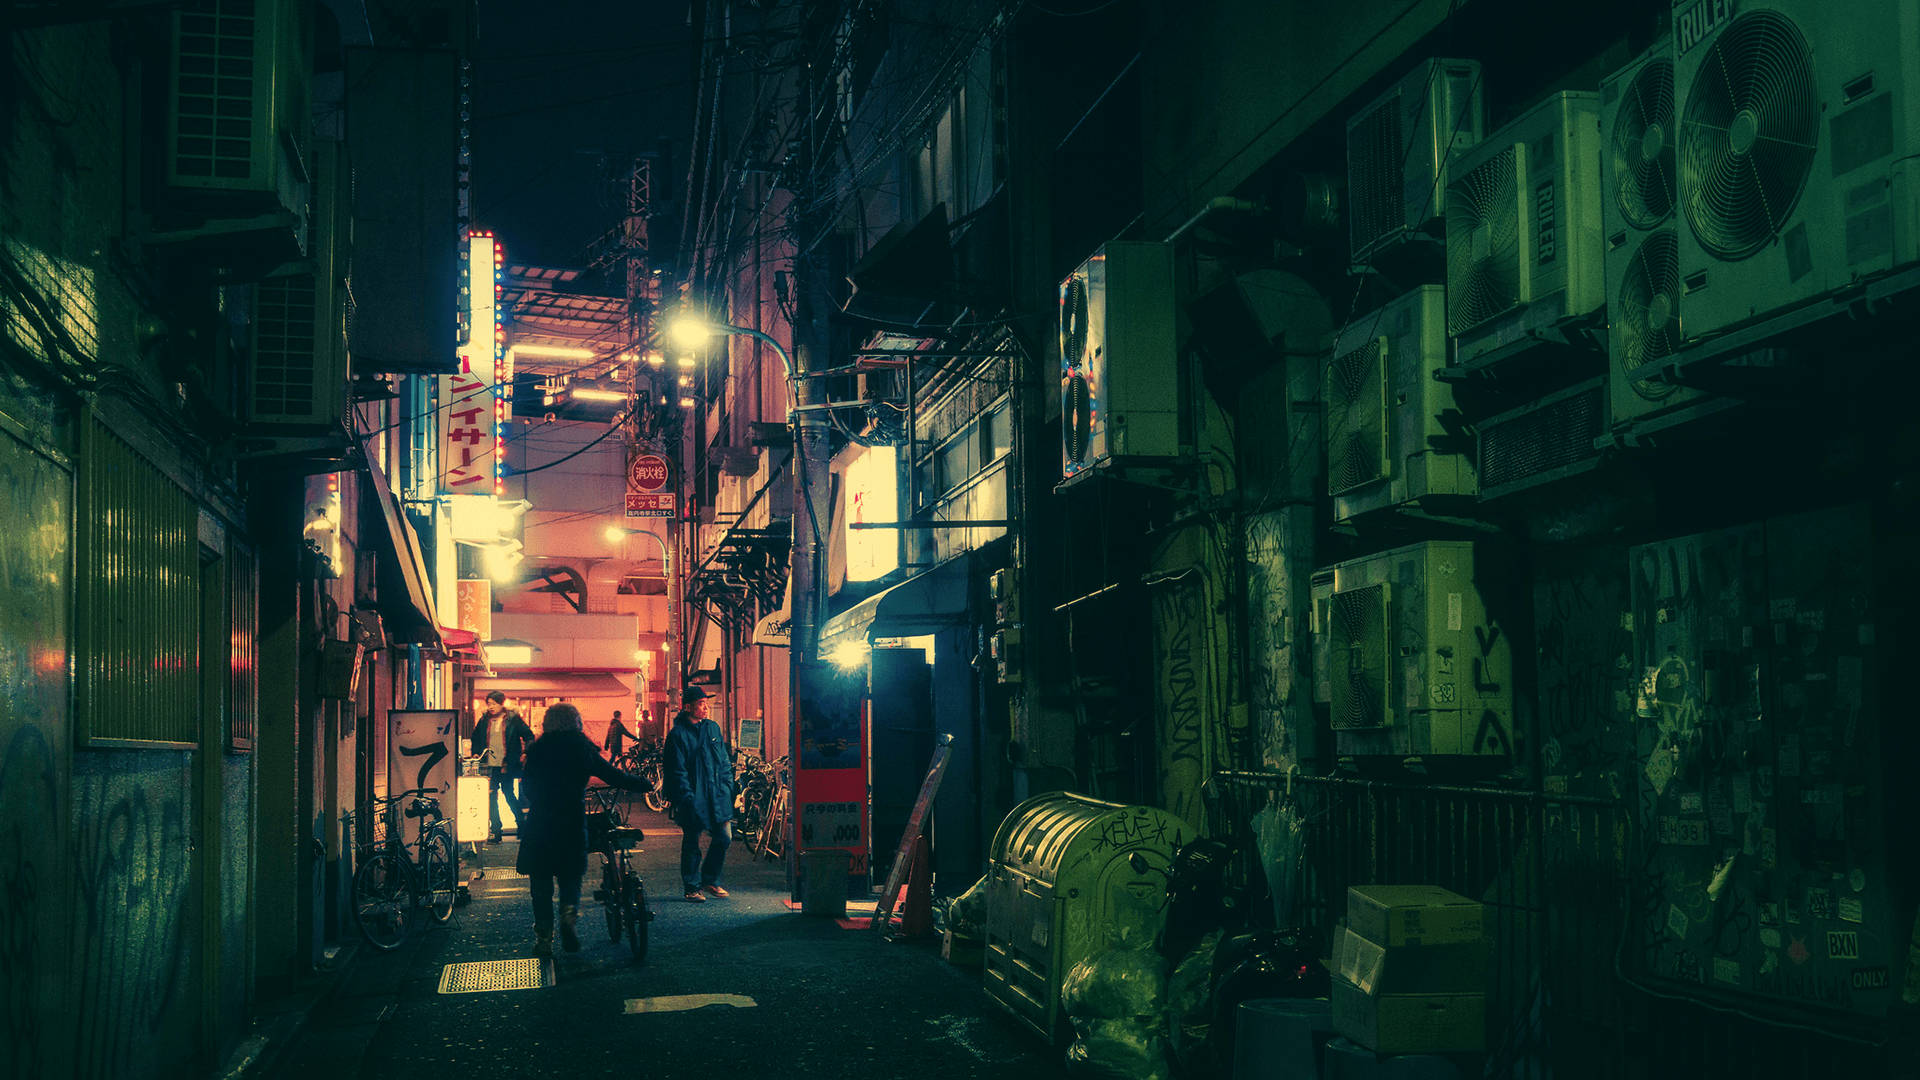 Dark Tokyo Street